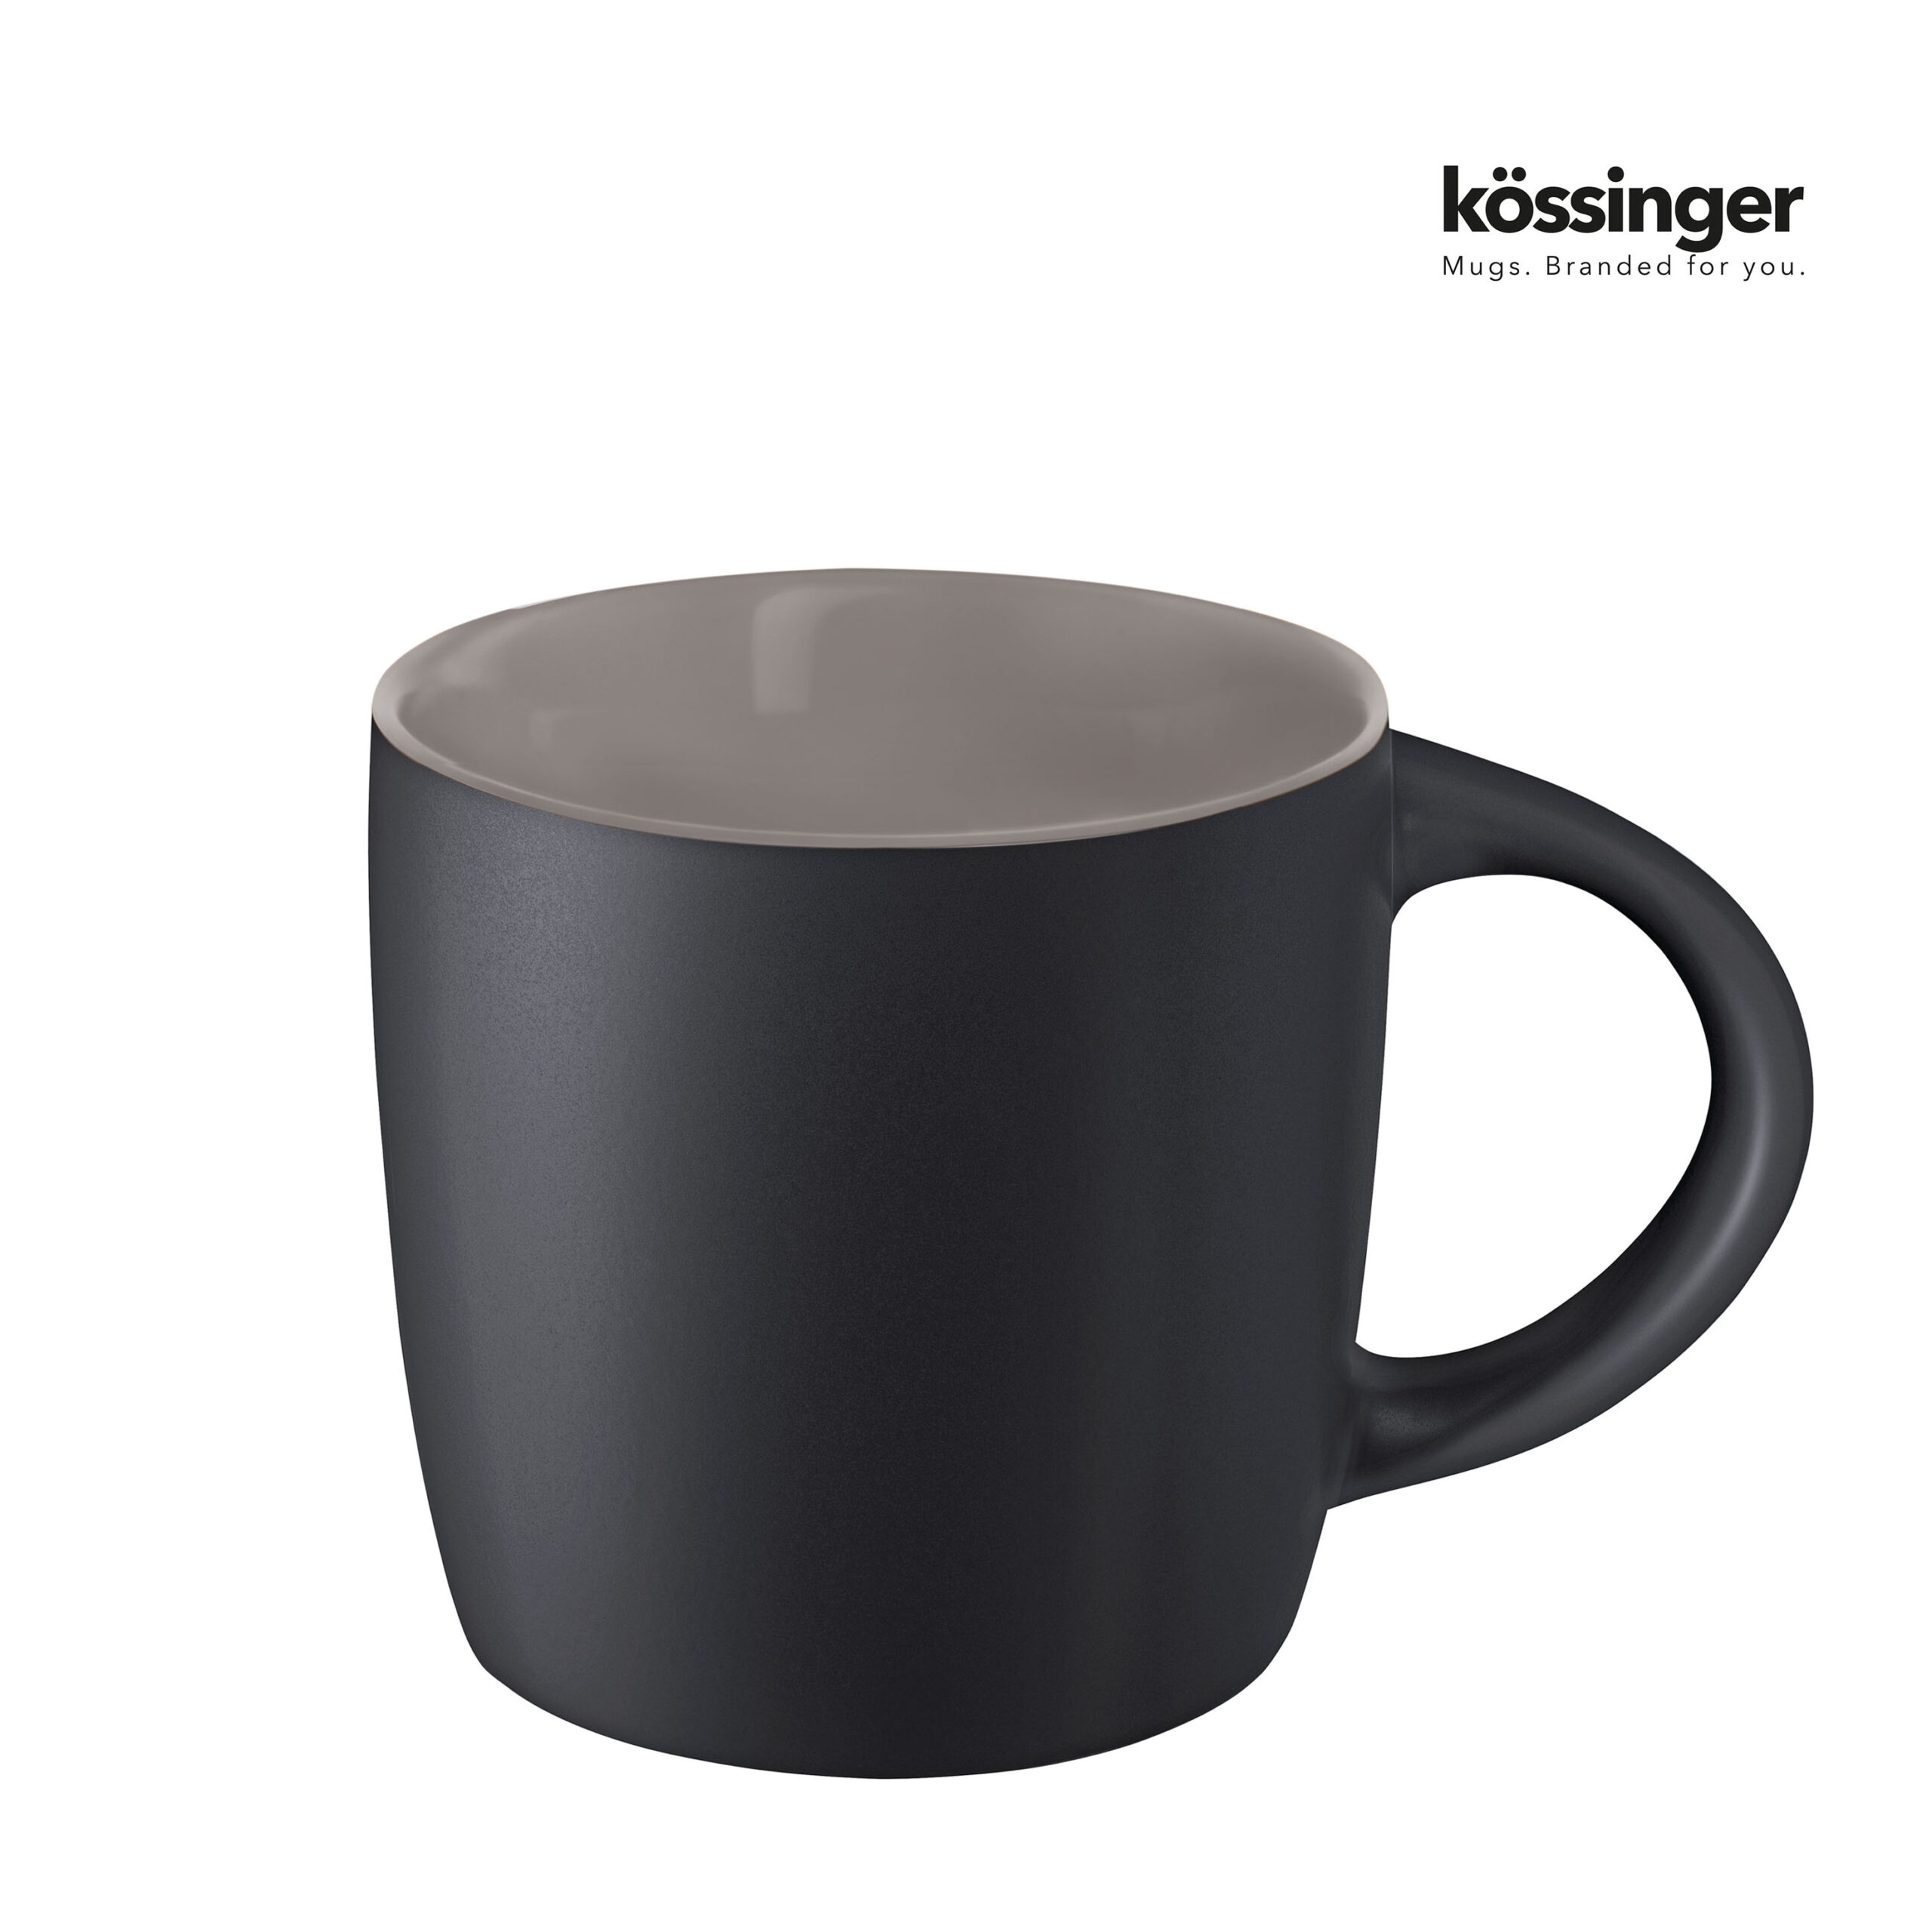 k009-koessinger-ennia-black-inside-warmgray10-2-p